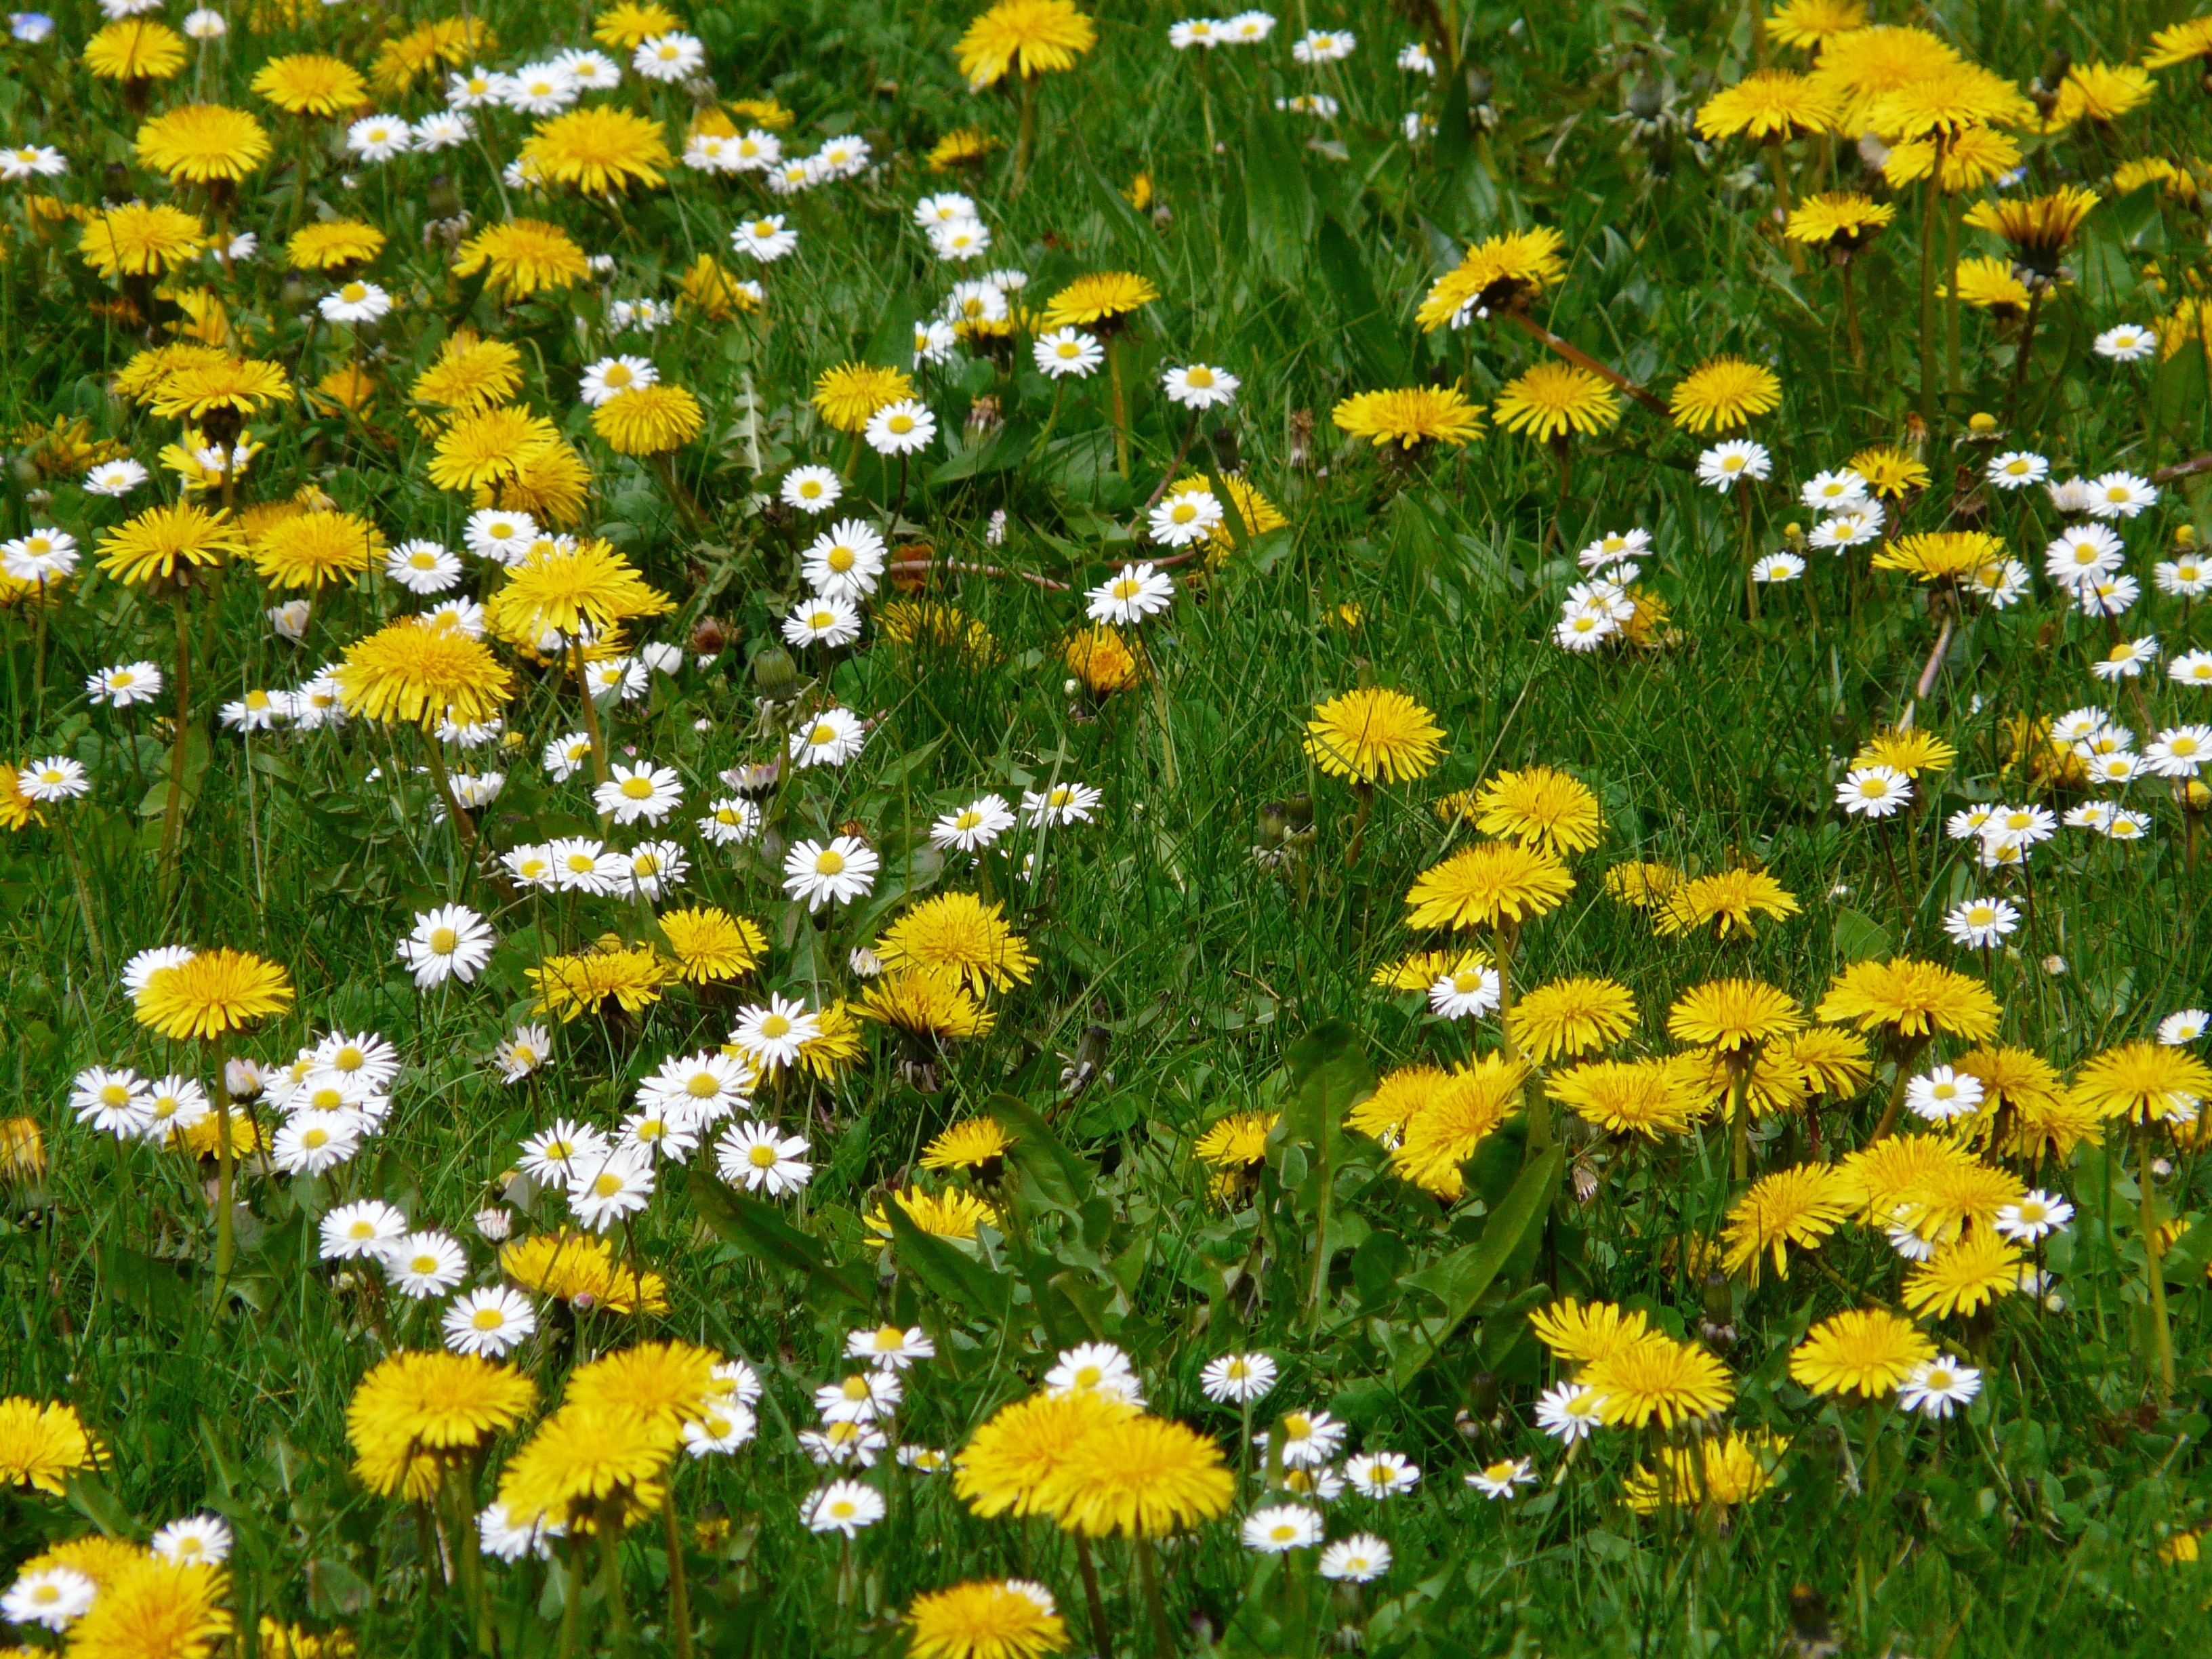 yellow and white daisies